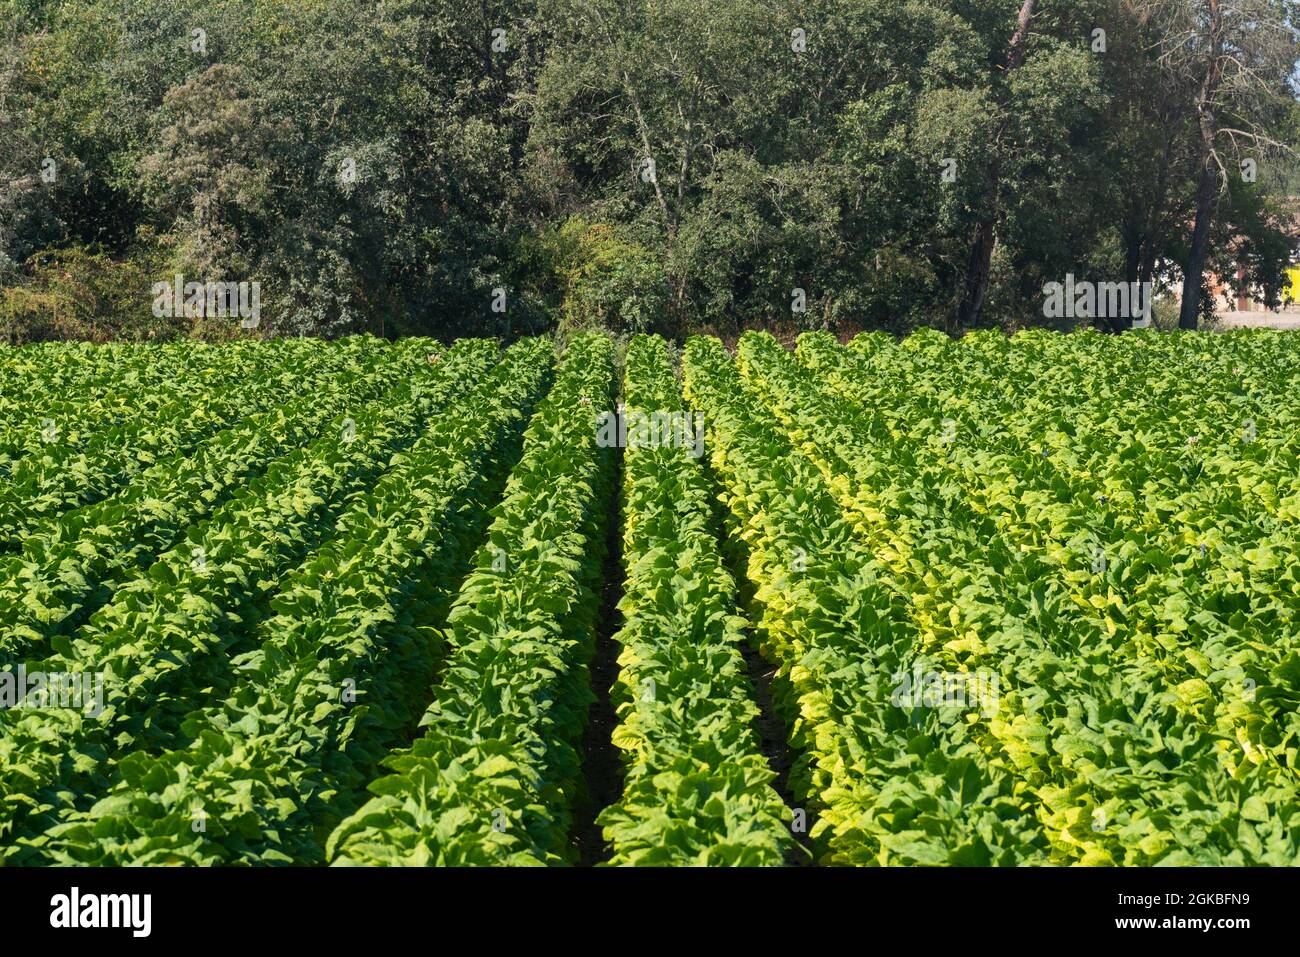 Campo verde de plantas de tabaco con árboles densos en el fondo Foto de stock